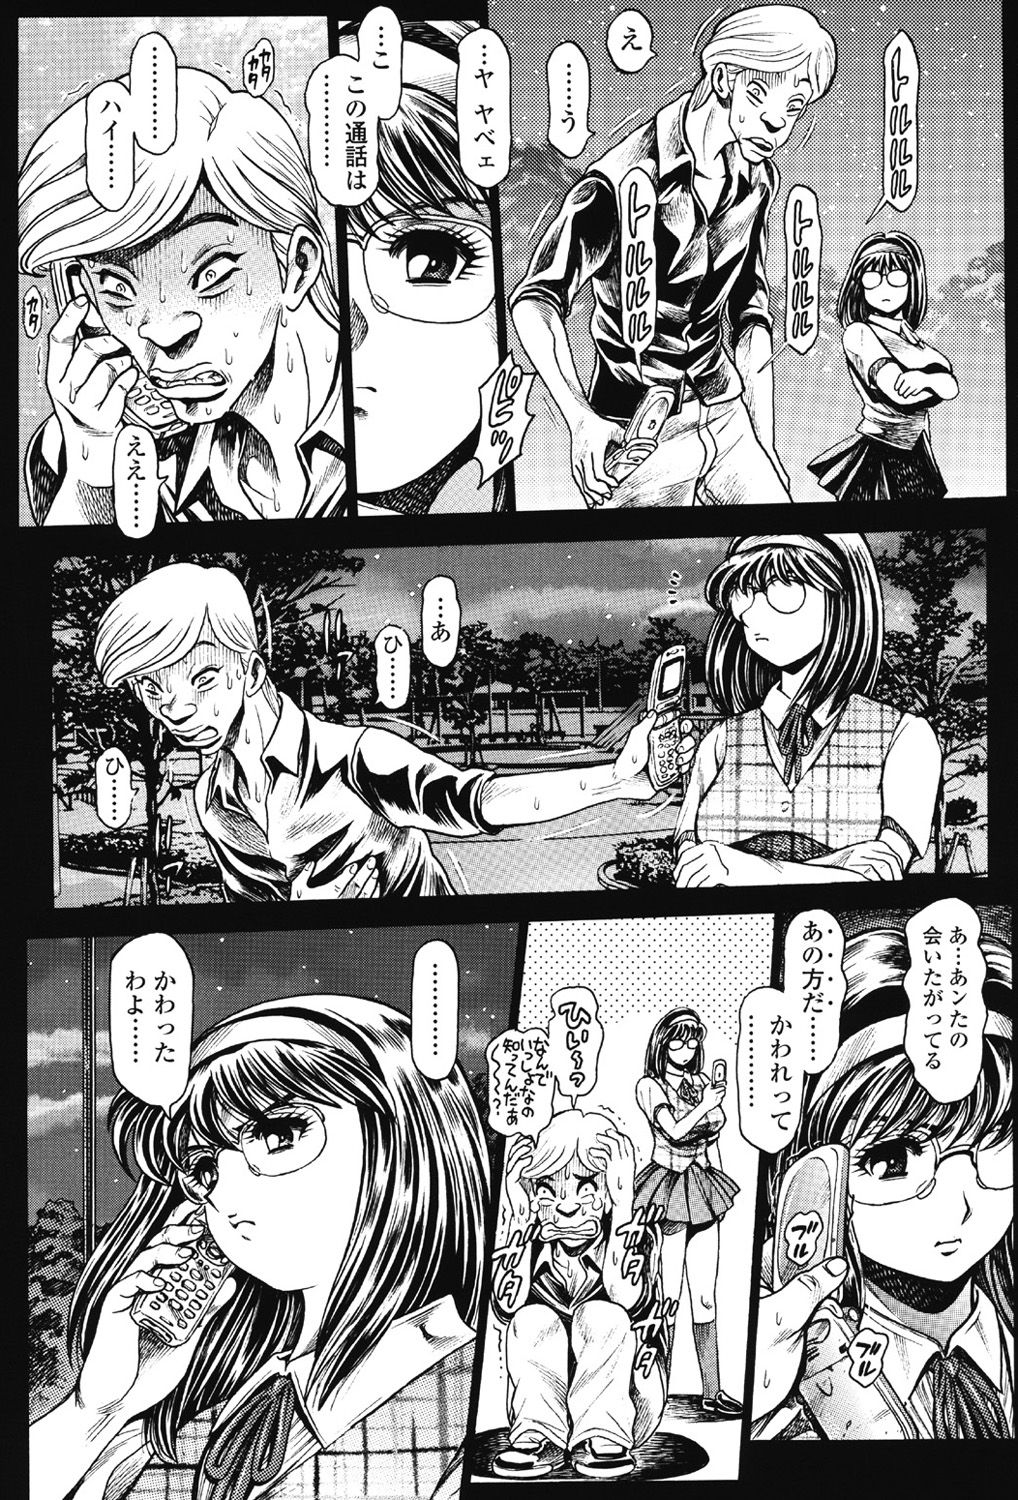 [Chataro] Nami SOS! 5 Previous Story Girls Another Days Keiko - 001 18